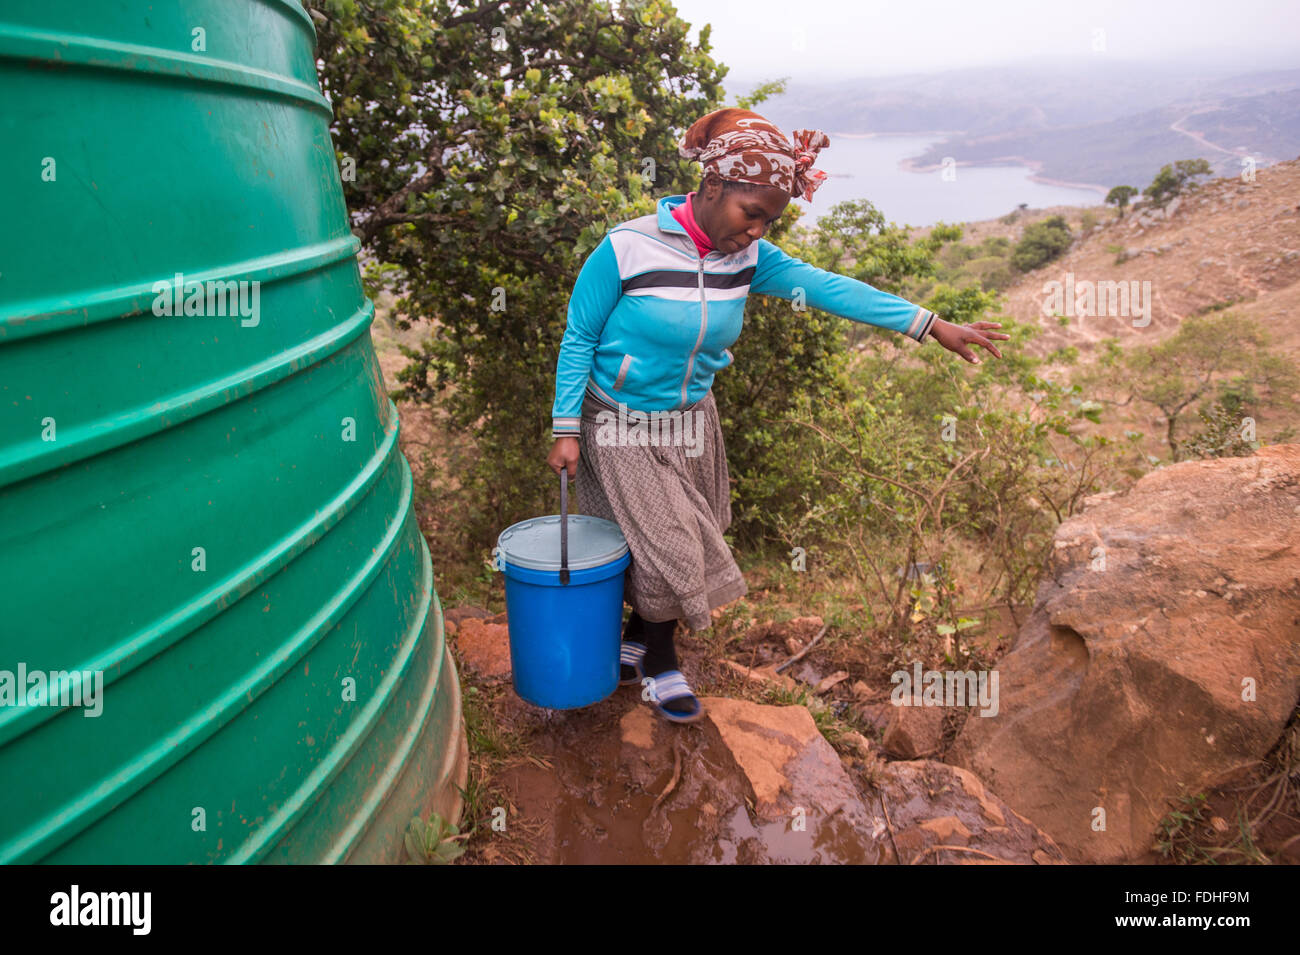 Frau, die trägt eines Eimers über felsiges Terrain in der Hhohho Region von Swasiland, Afrika. Stockfoto